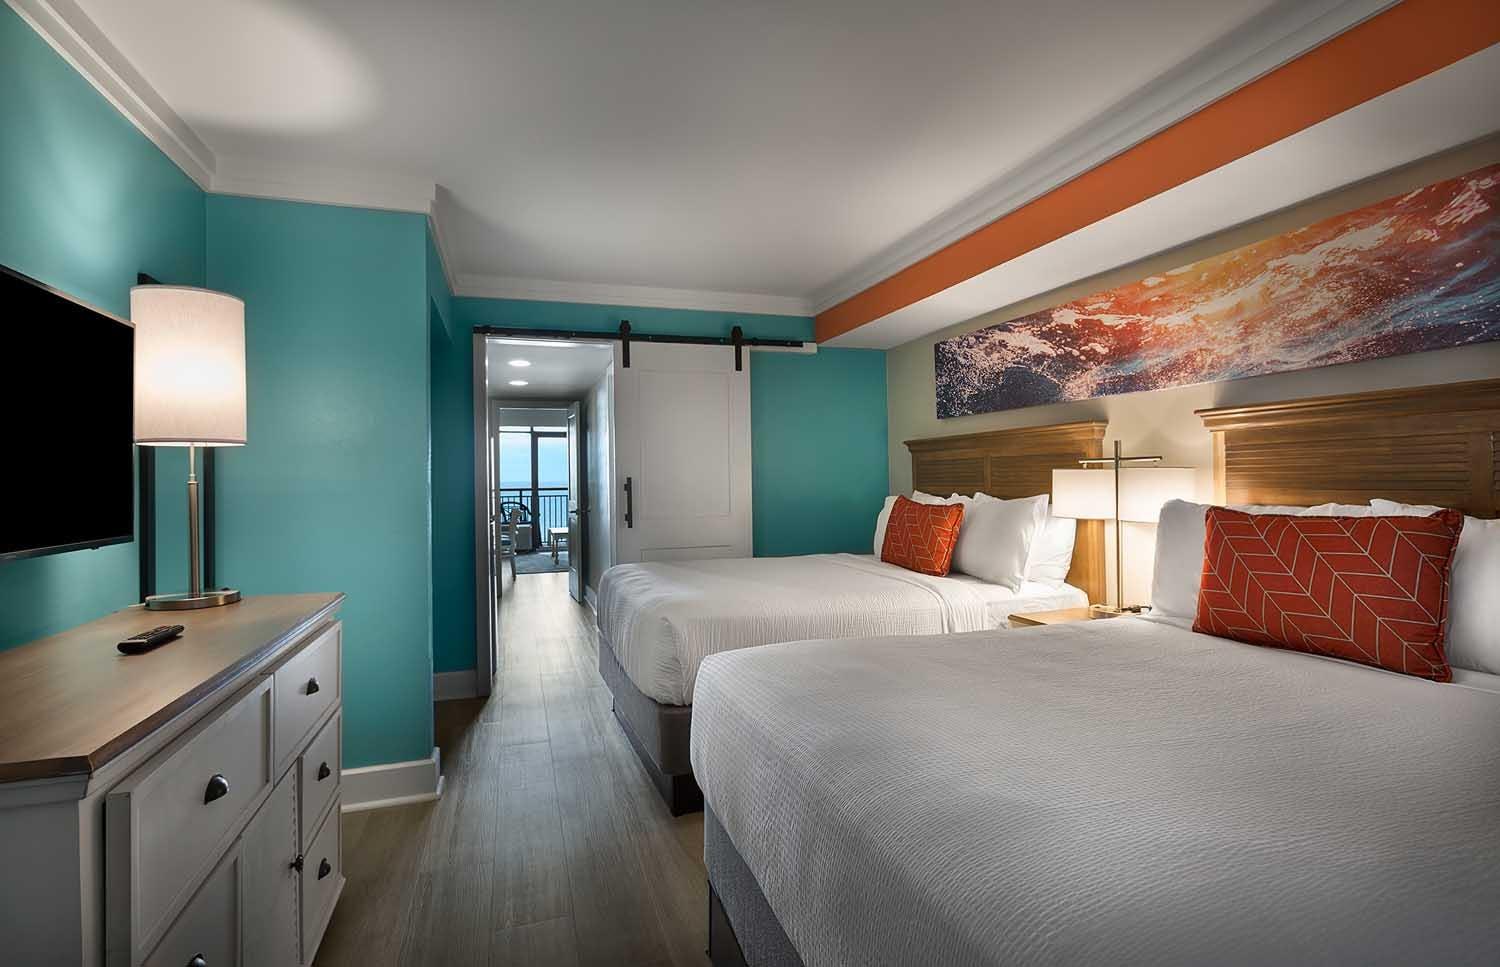 Grande Cayman Resort - 1 Bedroom Oceanfront Condo